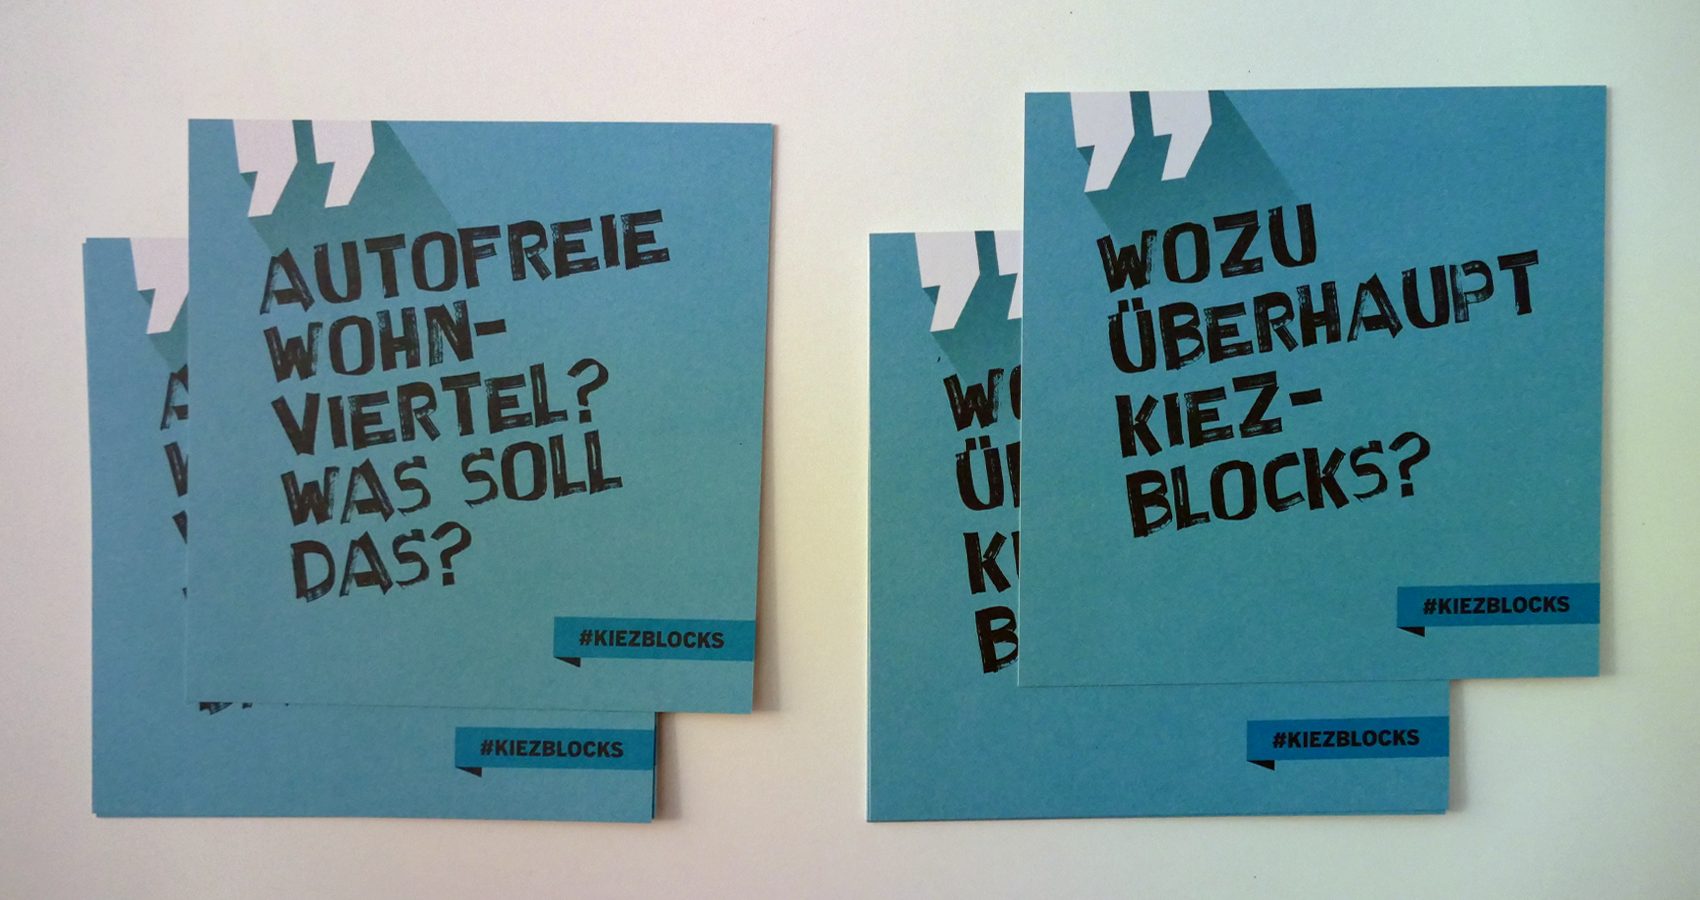 Kiezblocks – Postkarten mit Kiezblocks-kritischen Aussagen, die auf der Rückseite beantwortet werden